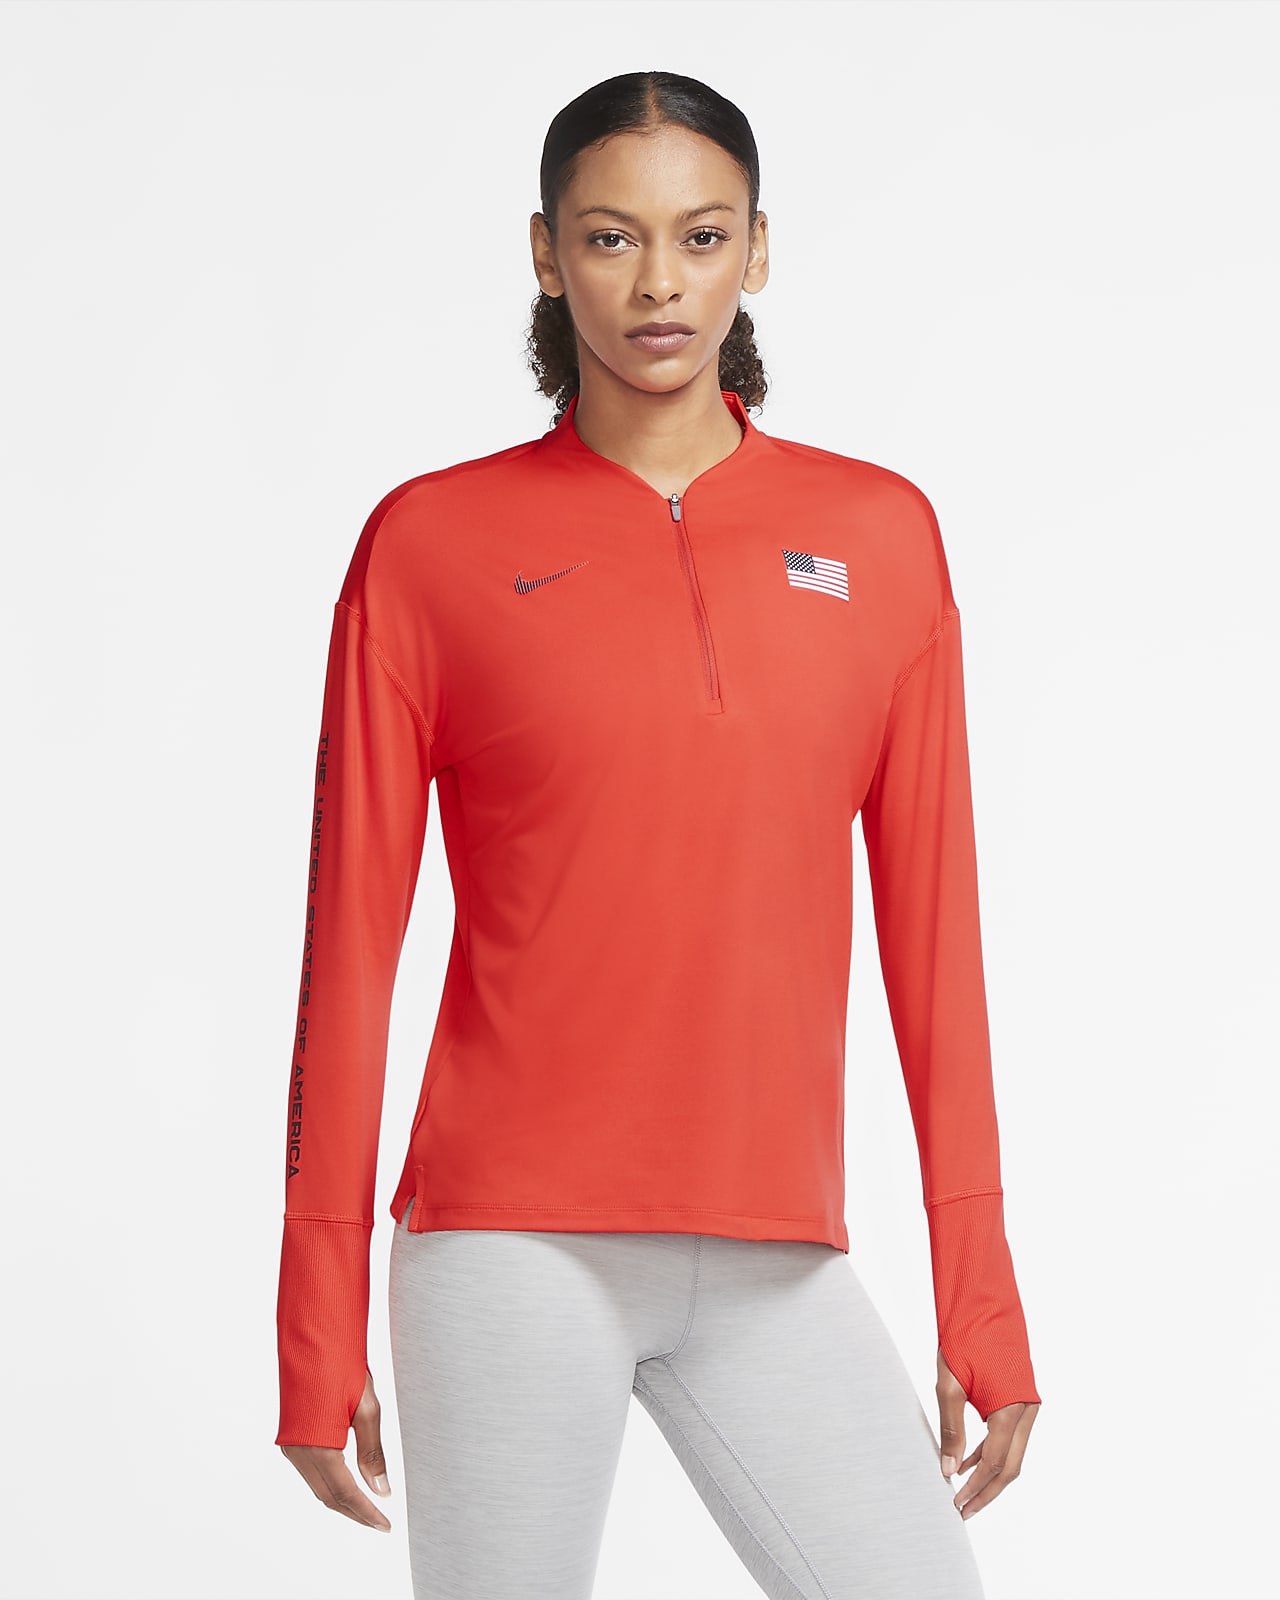 Bestemt Disciplinære Livlig Nike Team USA Element Women's 1/2-Zip Running Top. Nike.com